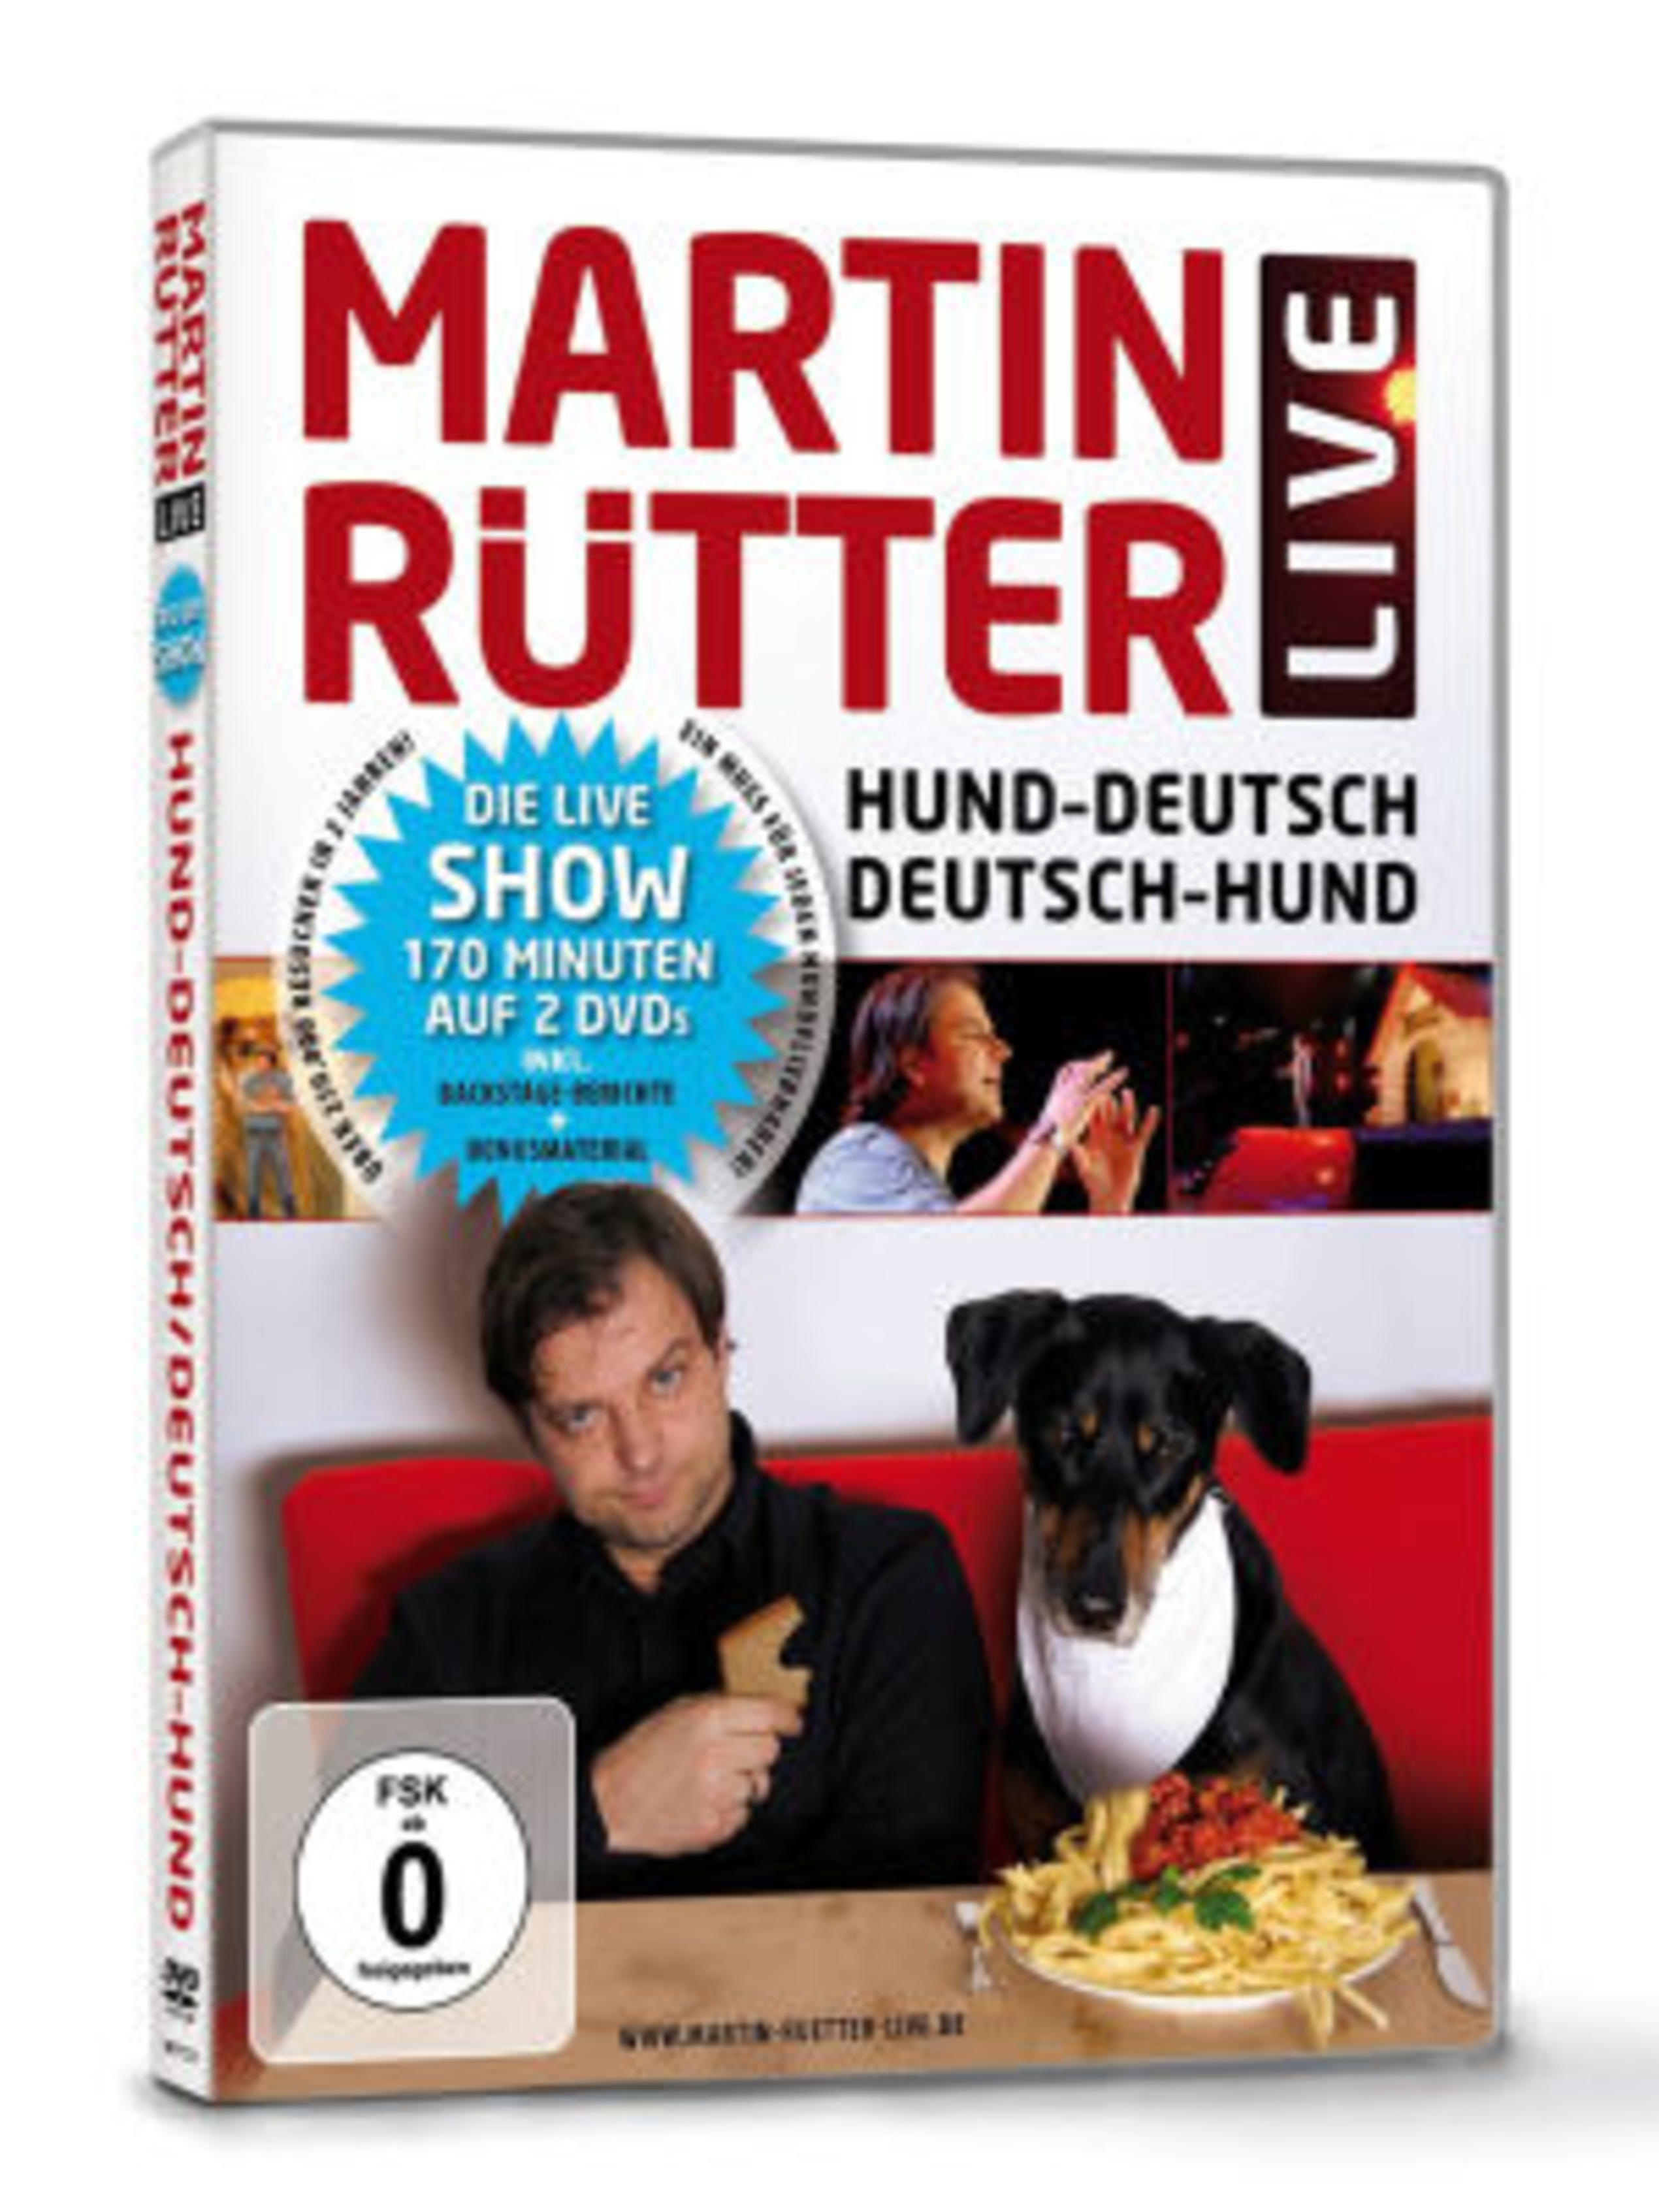 DVD-Cover von Martin Rütters Live-Show "Hund-Deutsch / Deutsch-Hund" (Foto: Sony Music / Spaßgesellschaft)